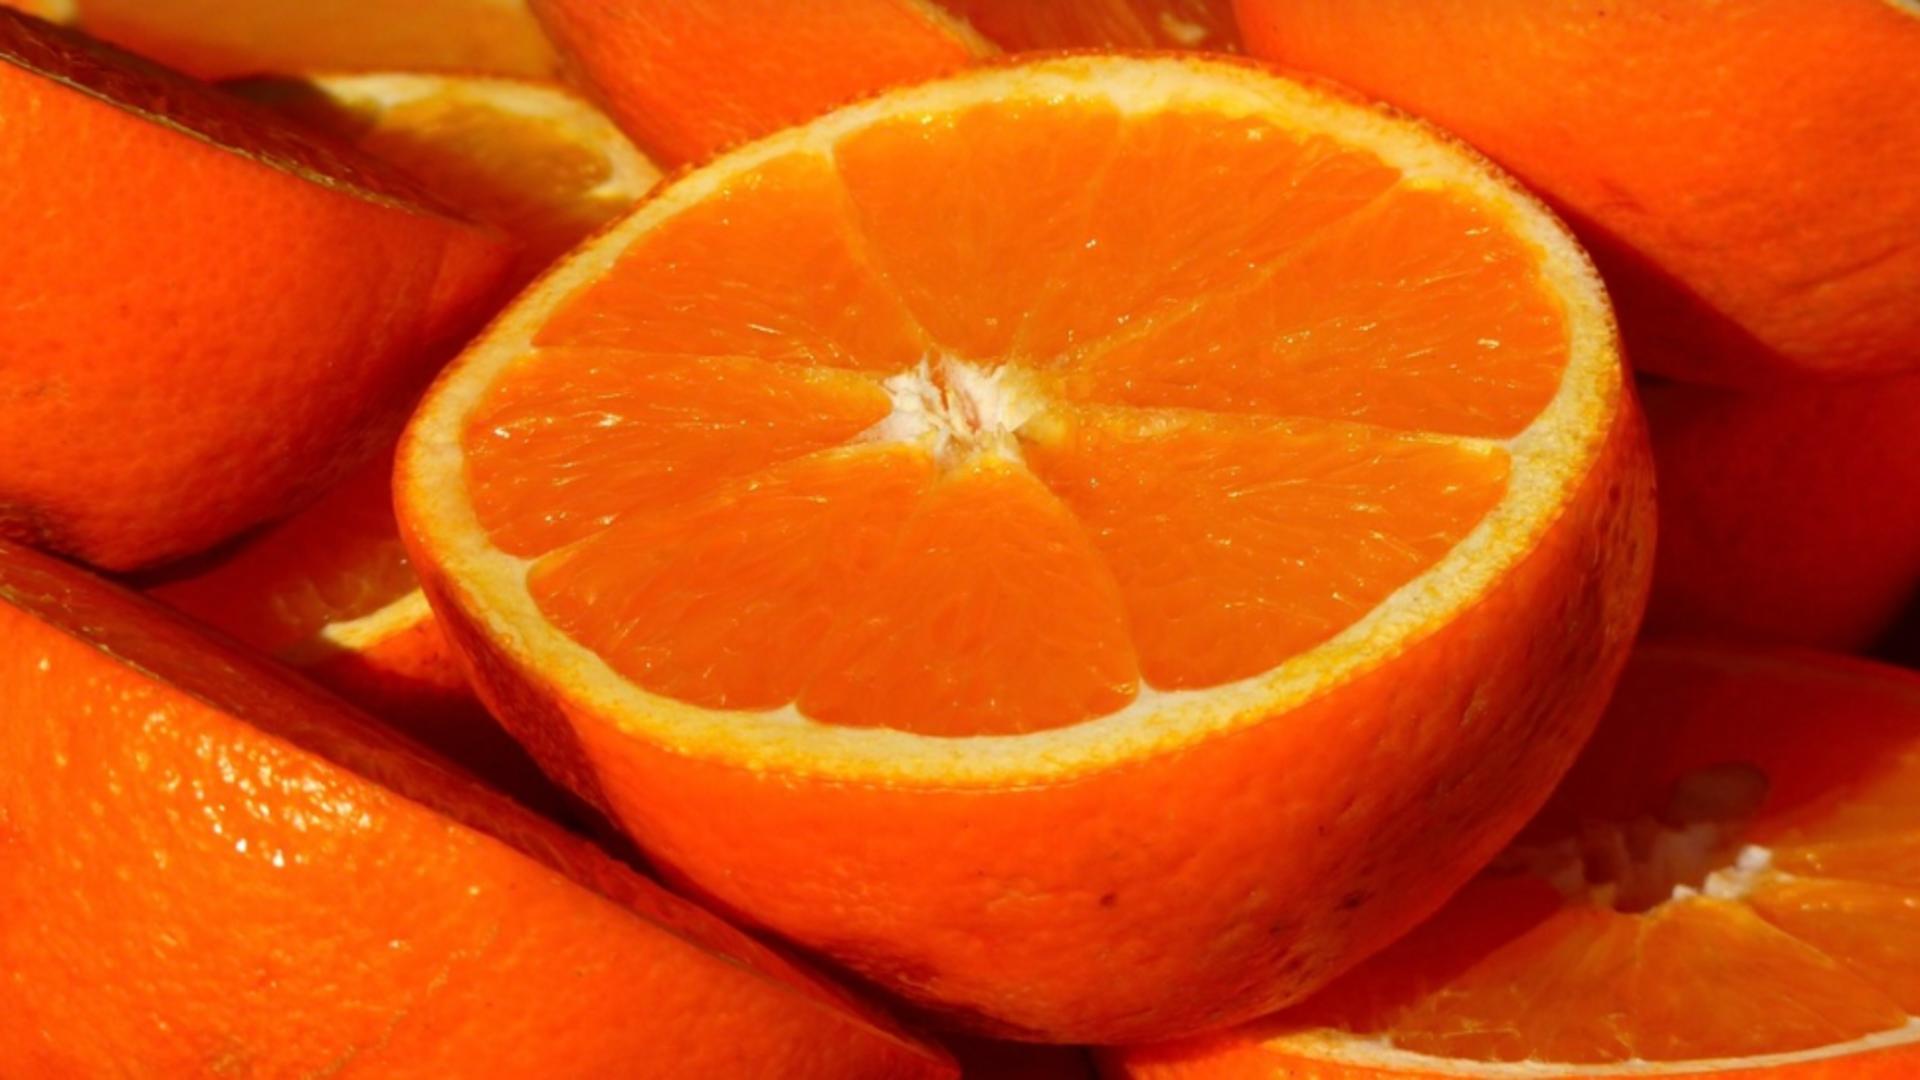 Nu mai mânca portocale dacă suferi de această boală!